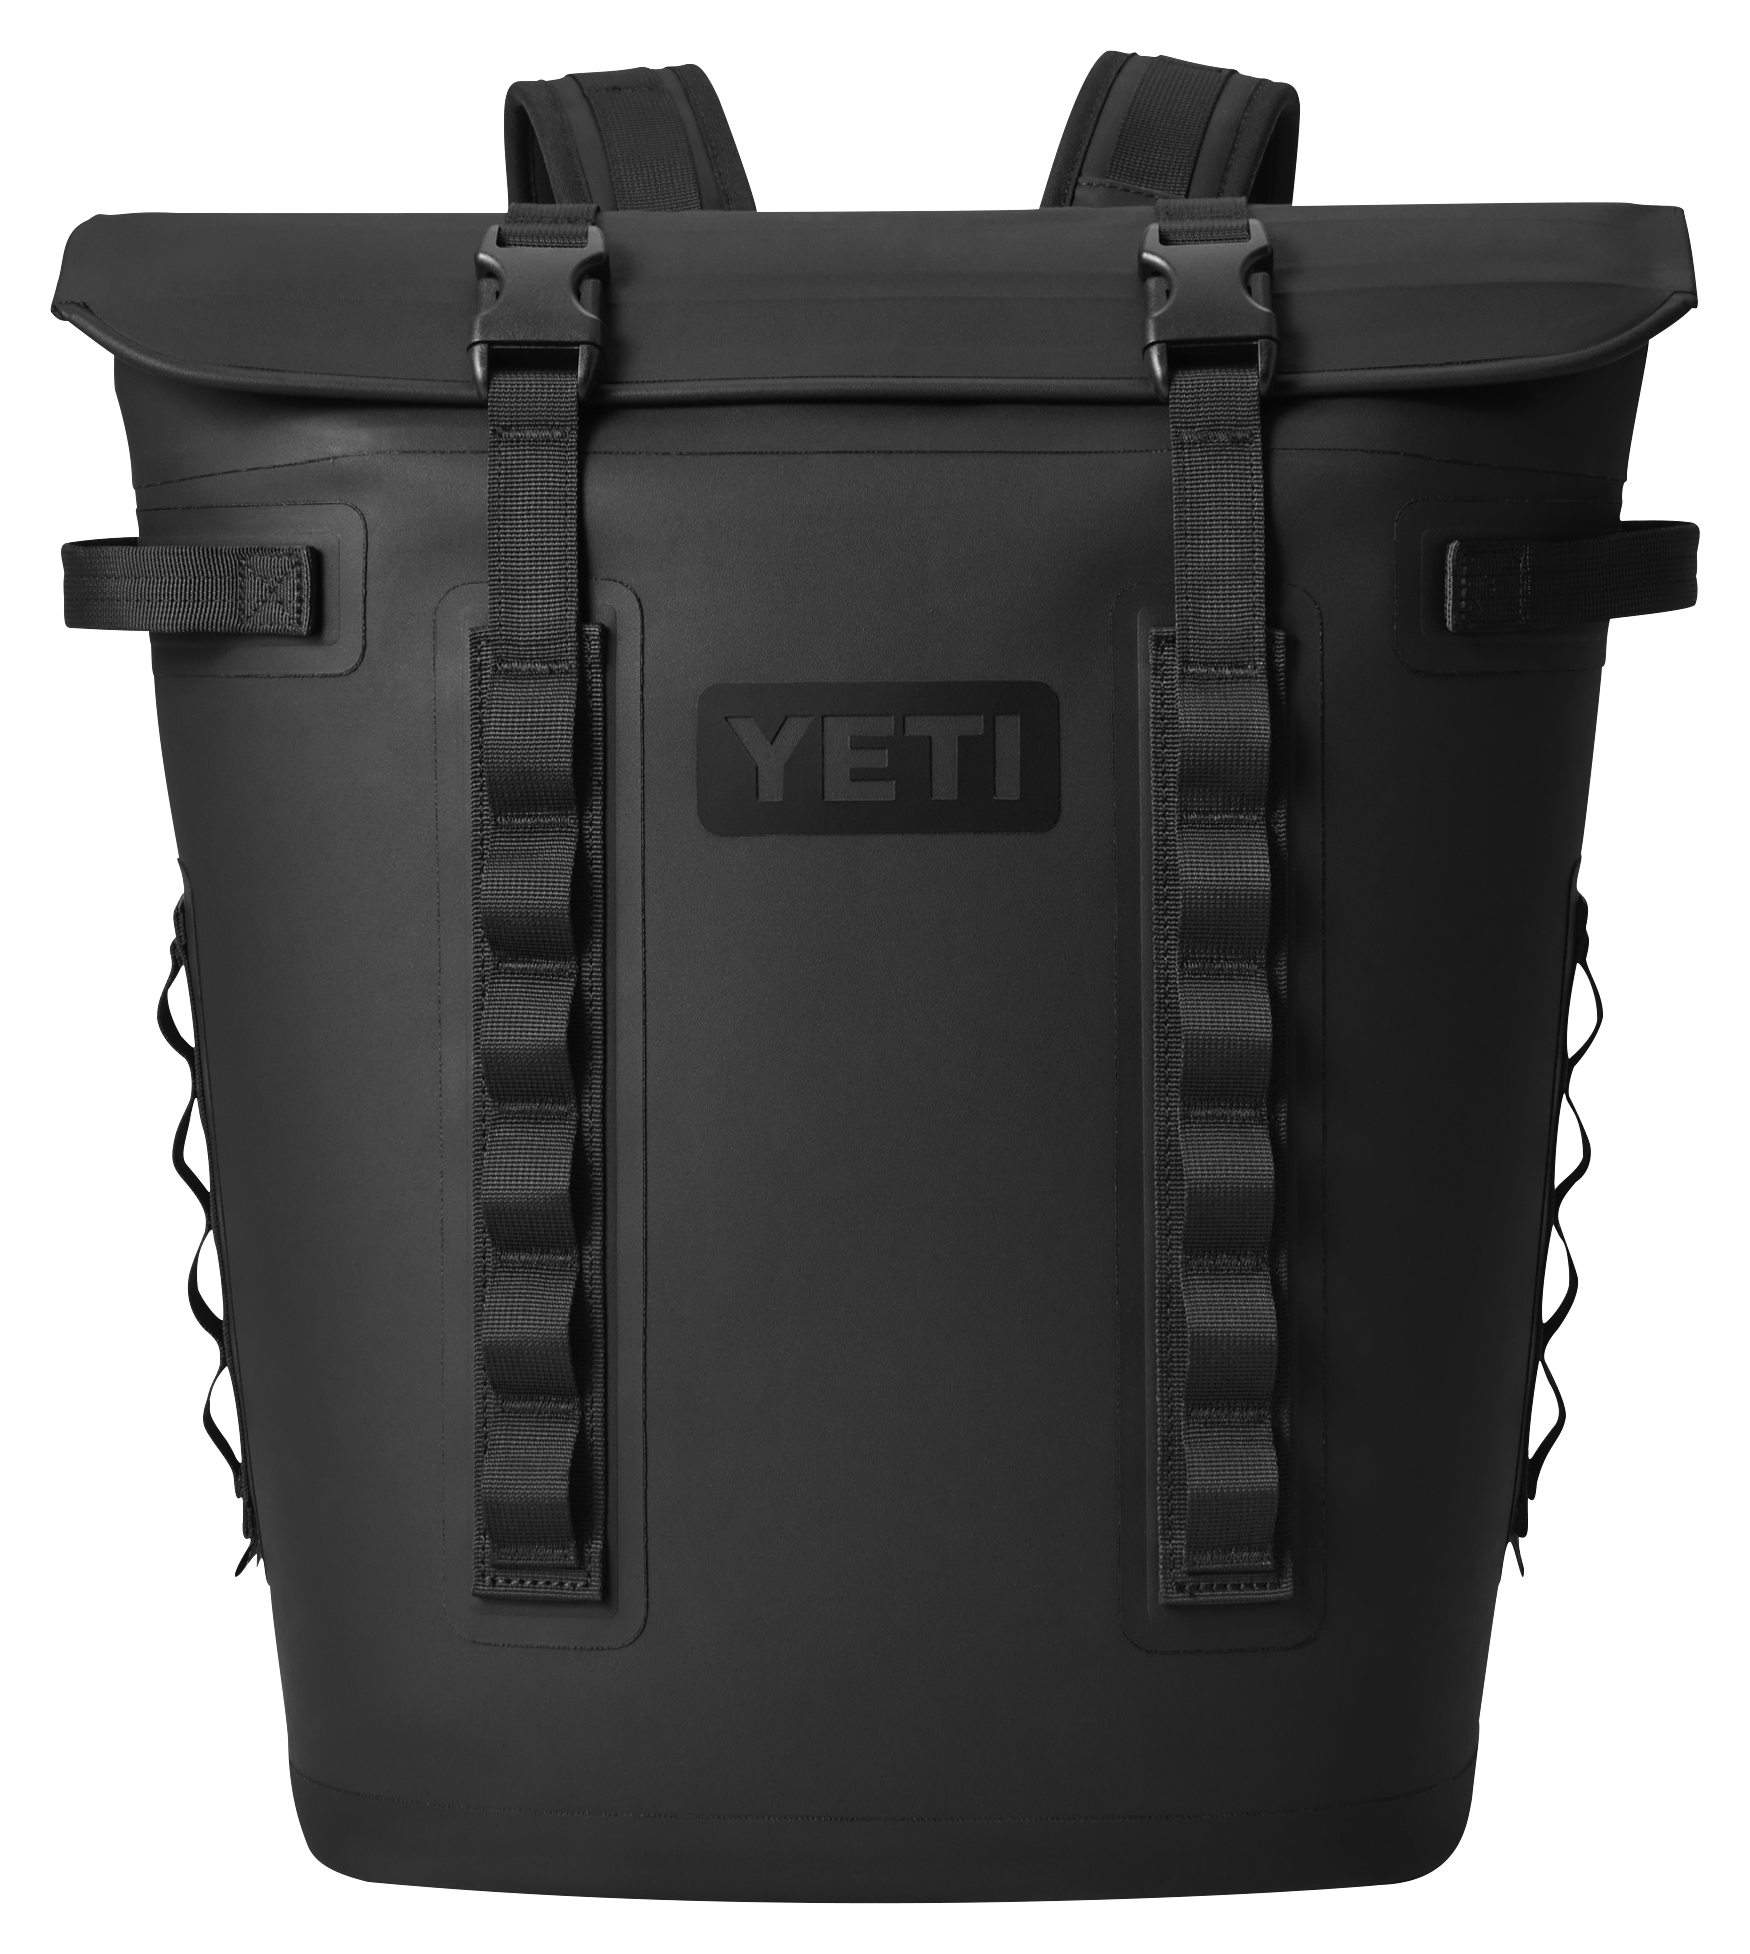 YETI Hopper M20 Backpack Cooler - Black - 36 Cans